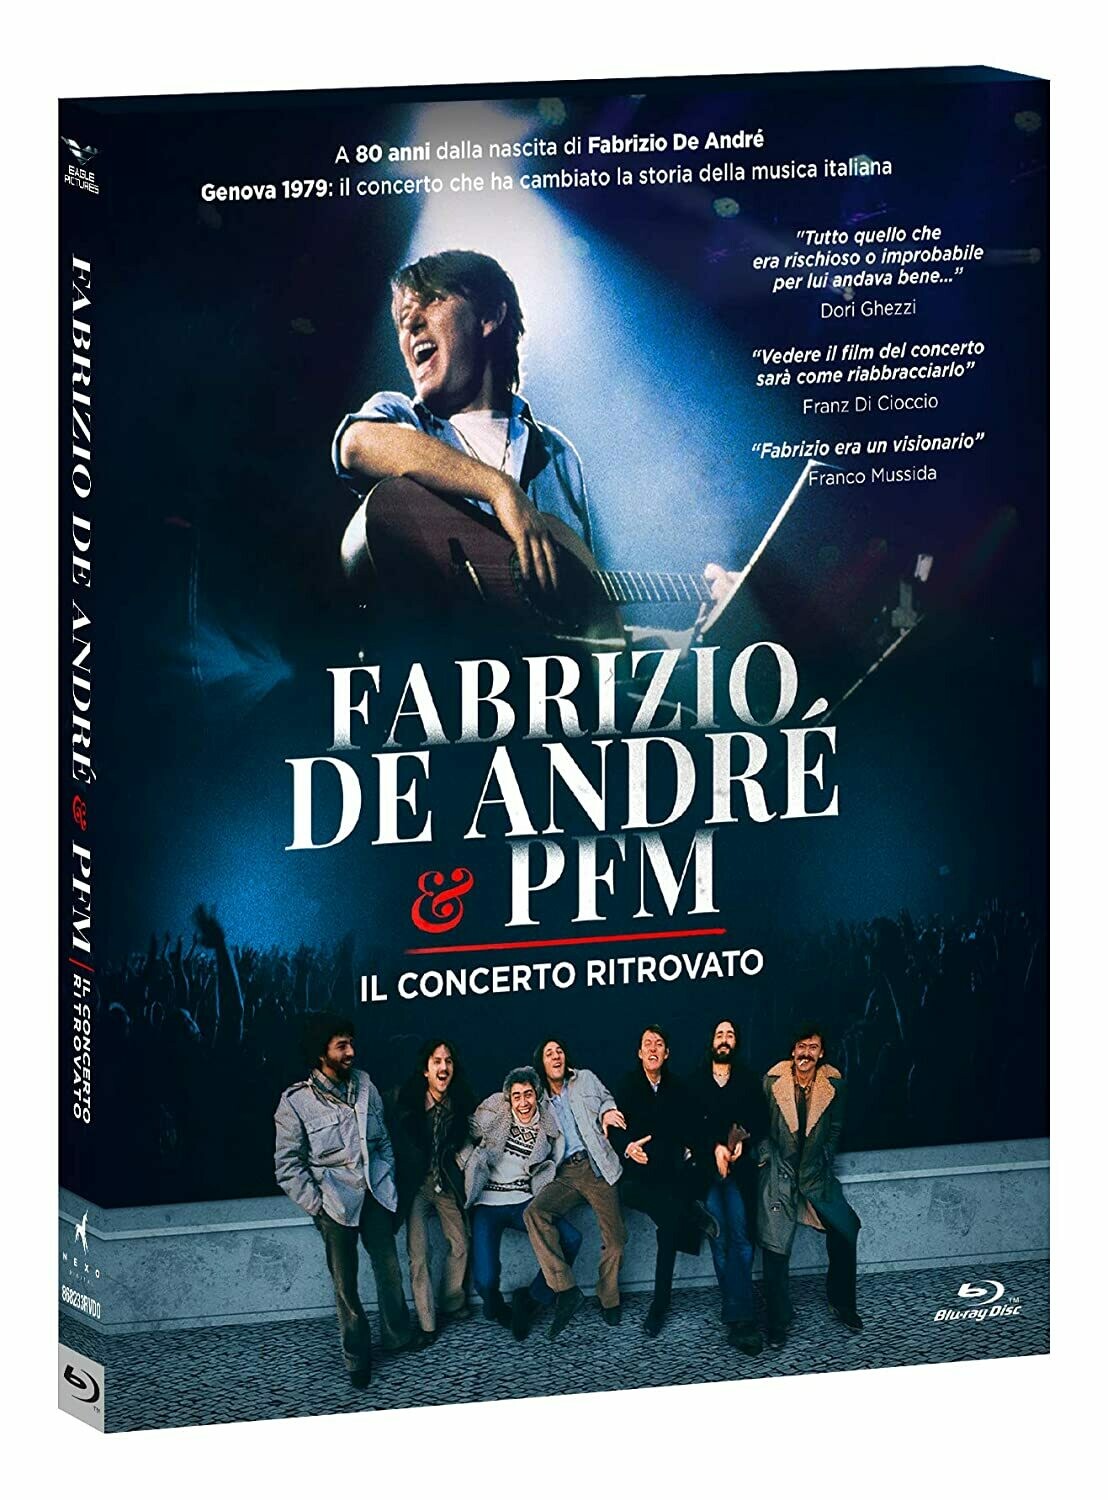 De Andrè Fabrizio & PFM - Il Concerto Ritrovato (DVD)